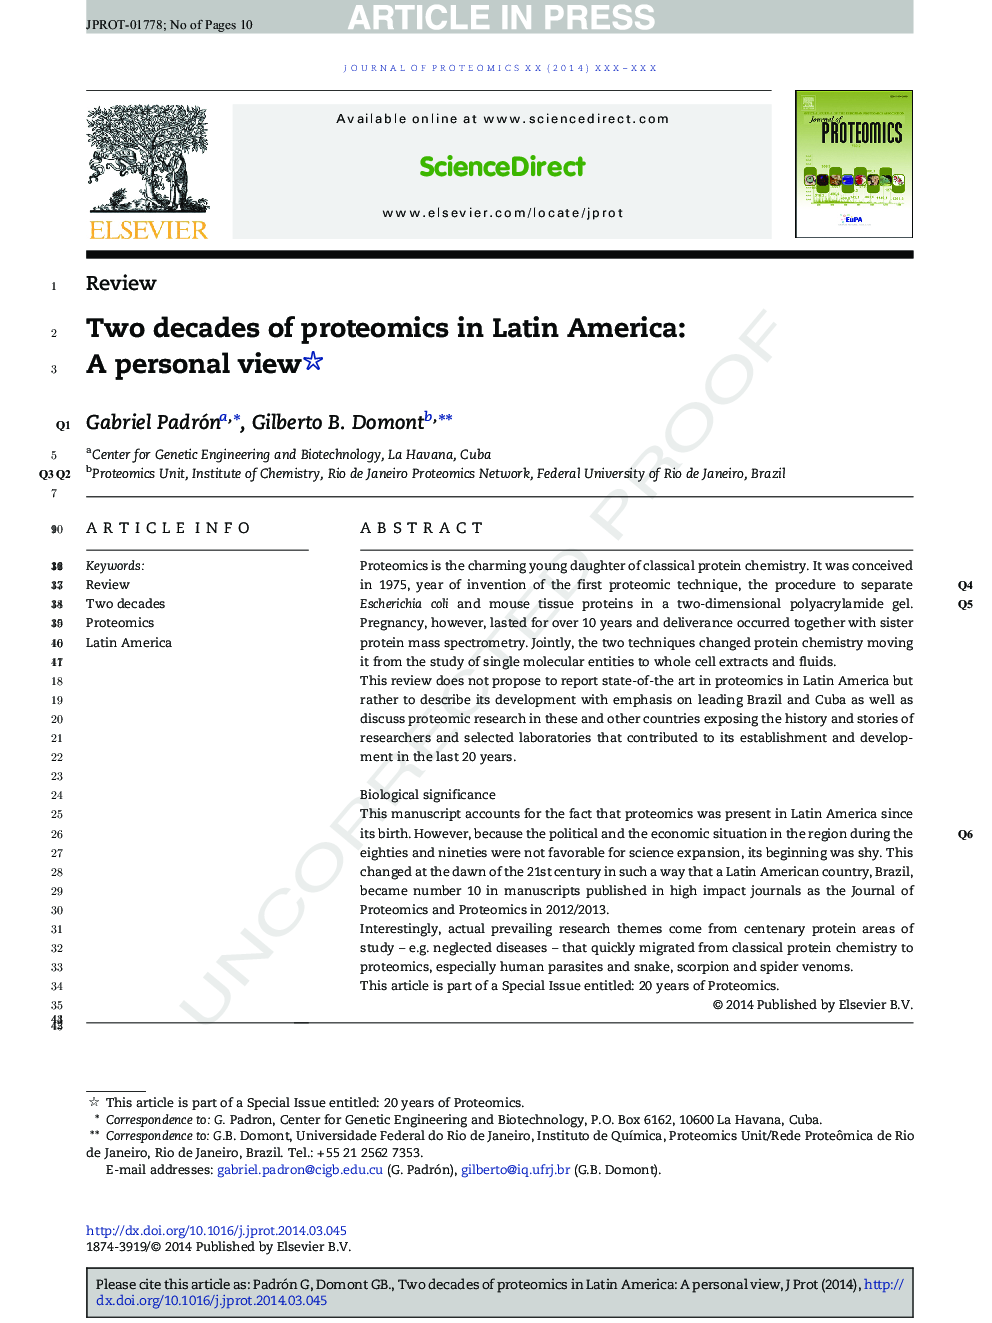 دو دهه پروتئومیک در آمریکای لاتین: دیدگاه شخصی 